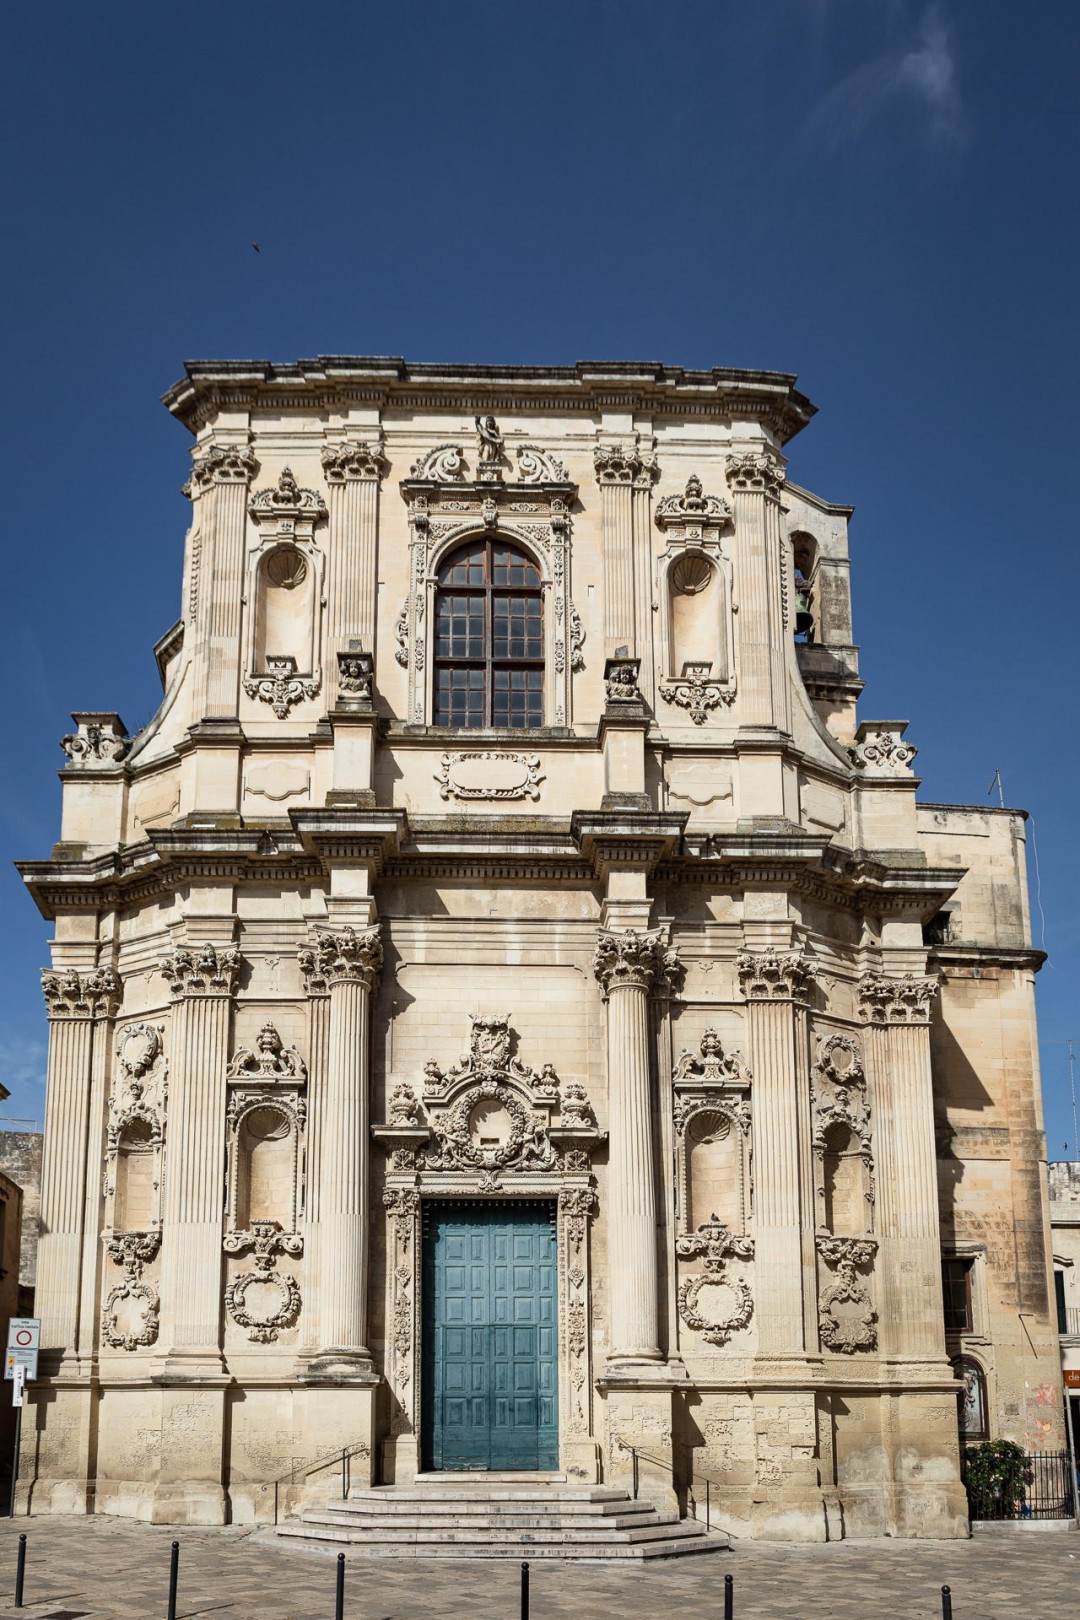 Chiesa di Santa Chiara Lecce facciata barocca